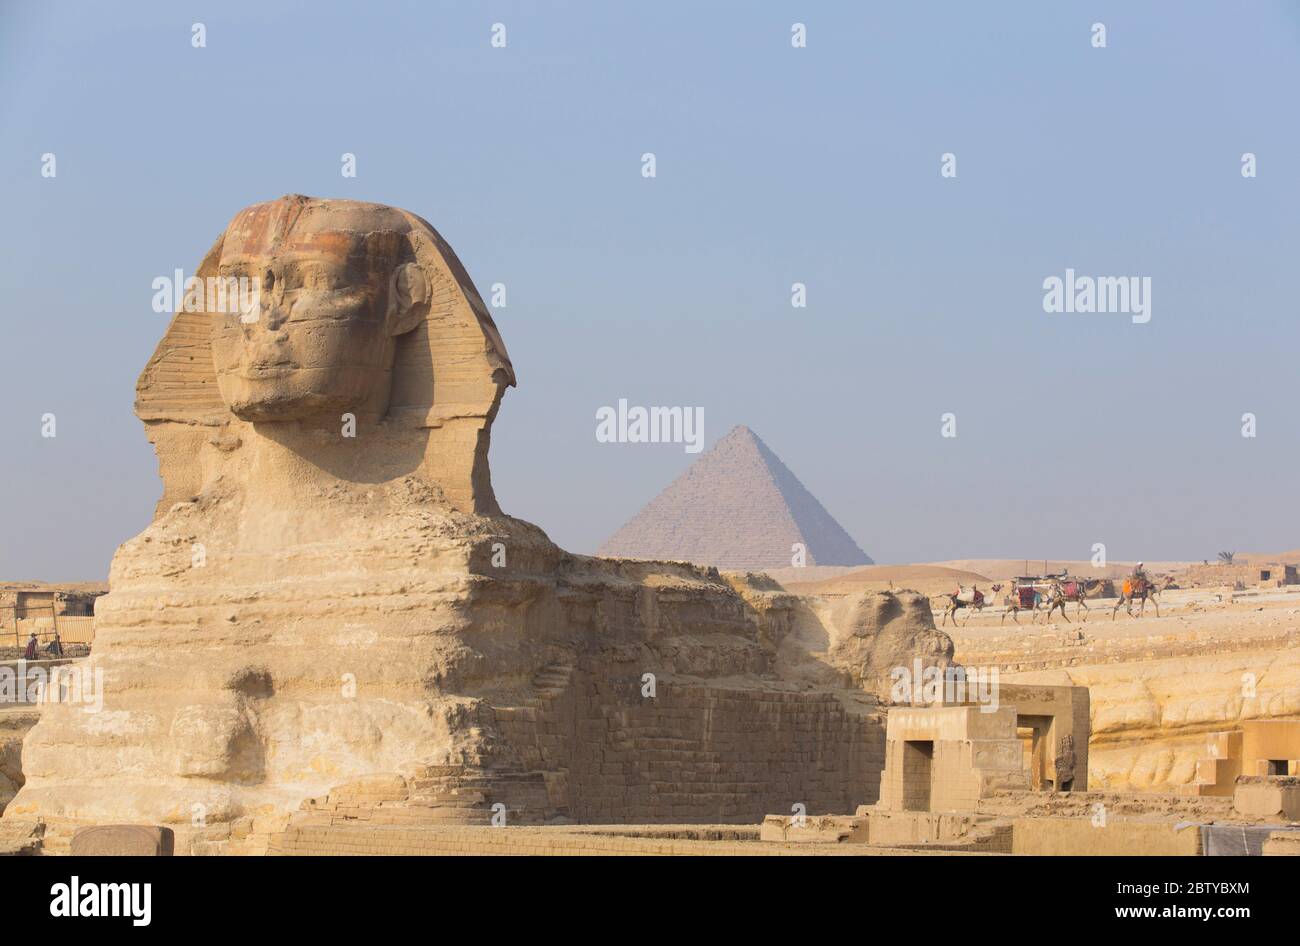 Le Grand Sphinx de Gizeh, Pyramide de Mycerinus en arrière-plan, site du patrimoine mondial de l'UNESCO, Gizeh, Égypte, Afrique du Nord, Afrique Banque D'Images